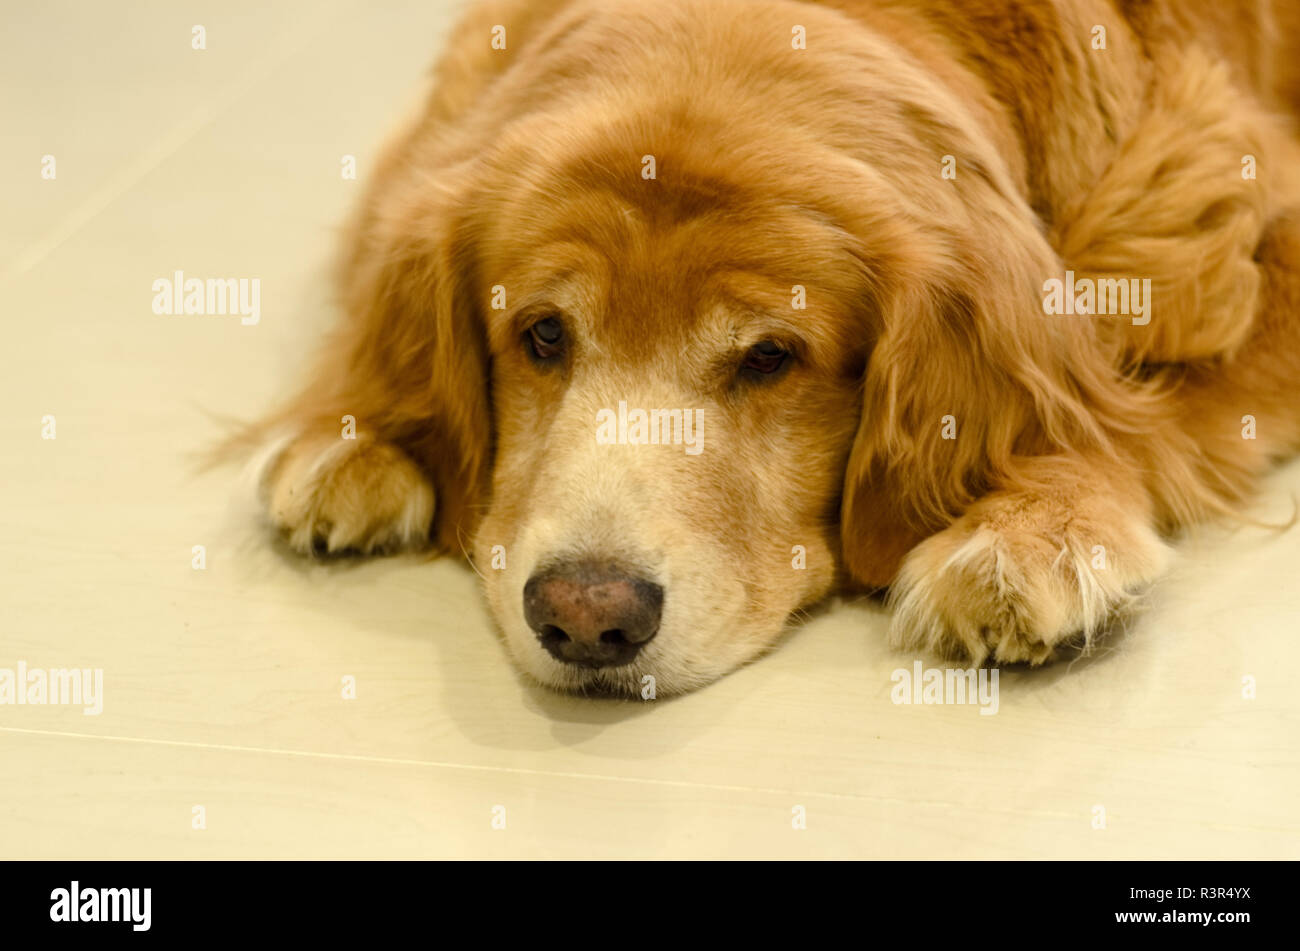 Vue avant close up image d'une race de chien Golden Retriever couché sur le plancher blanc Banque D'Images